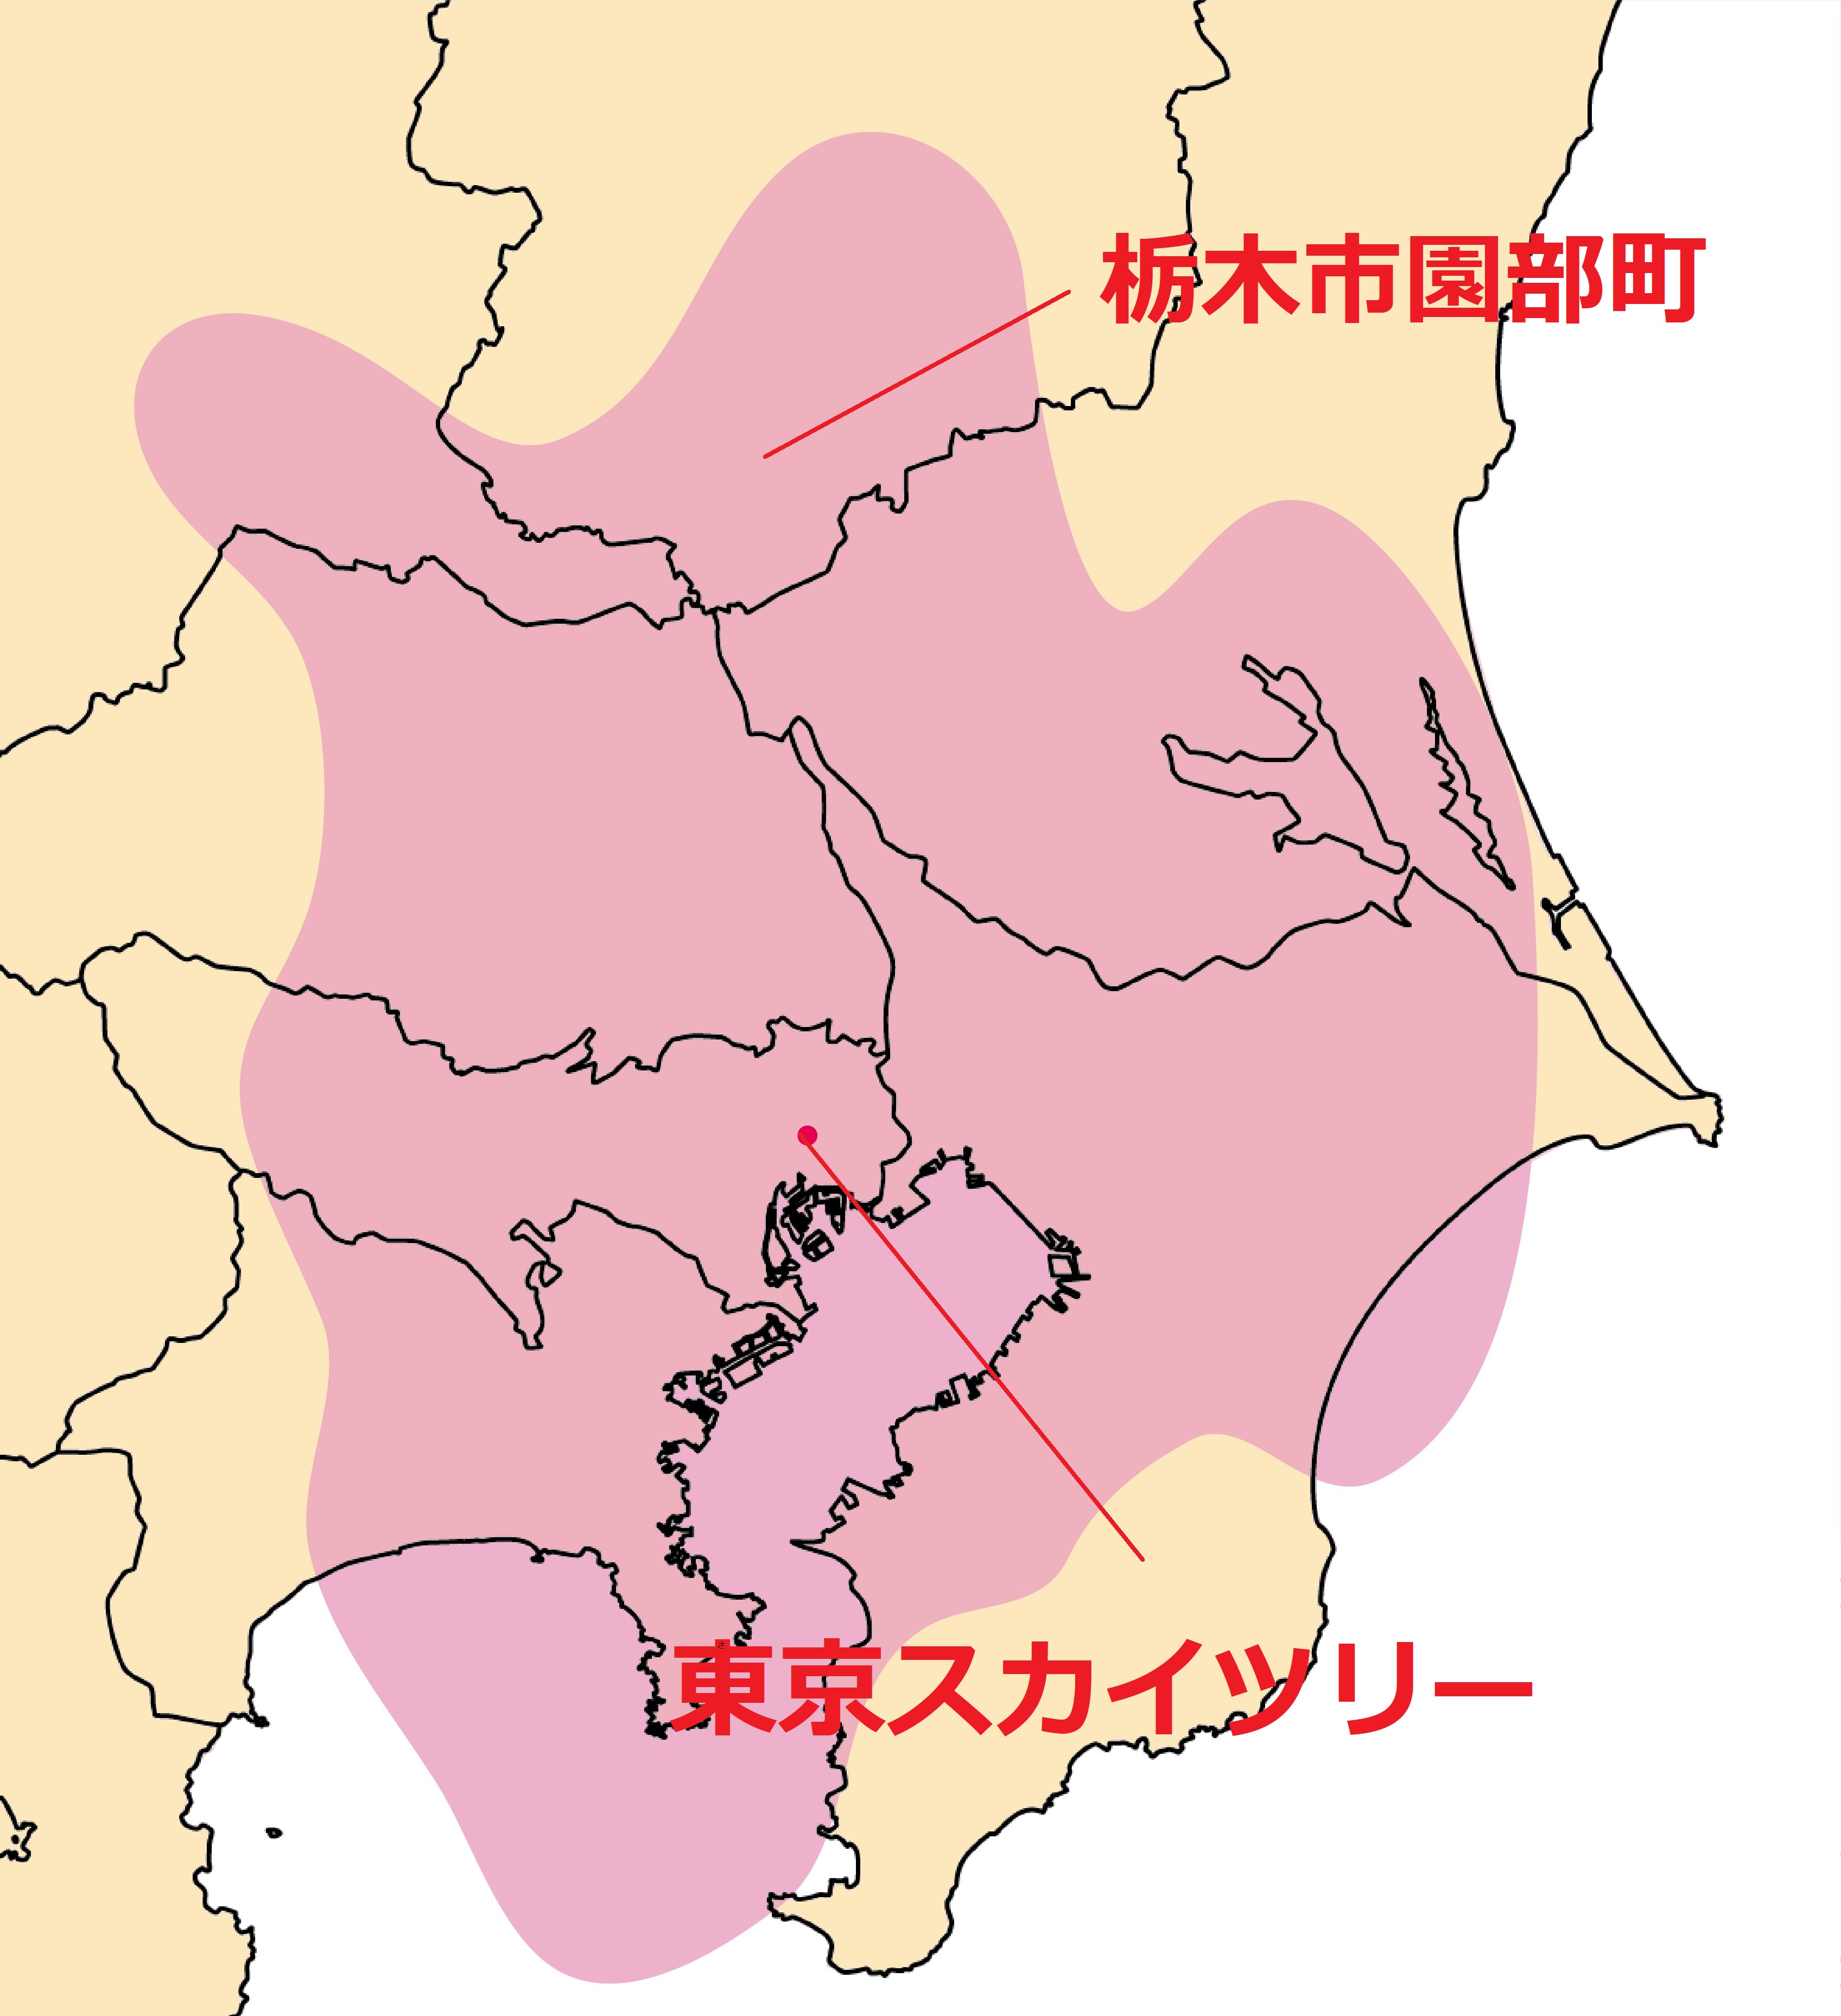 東京スカイツリーの電波受信範囲を示した地図